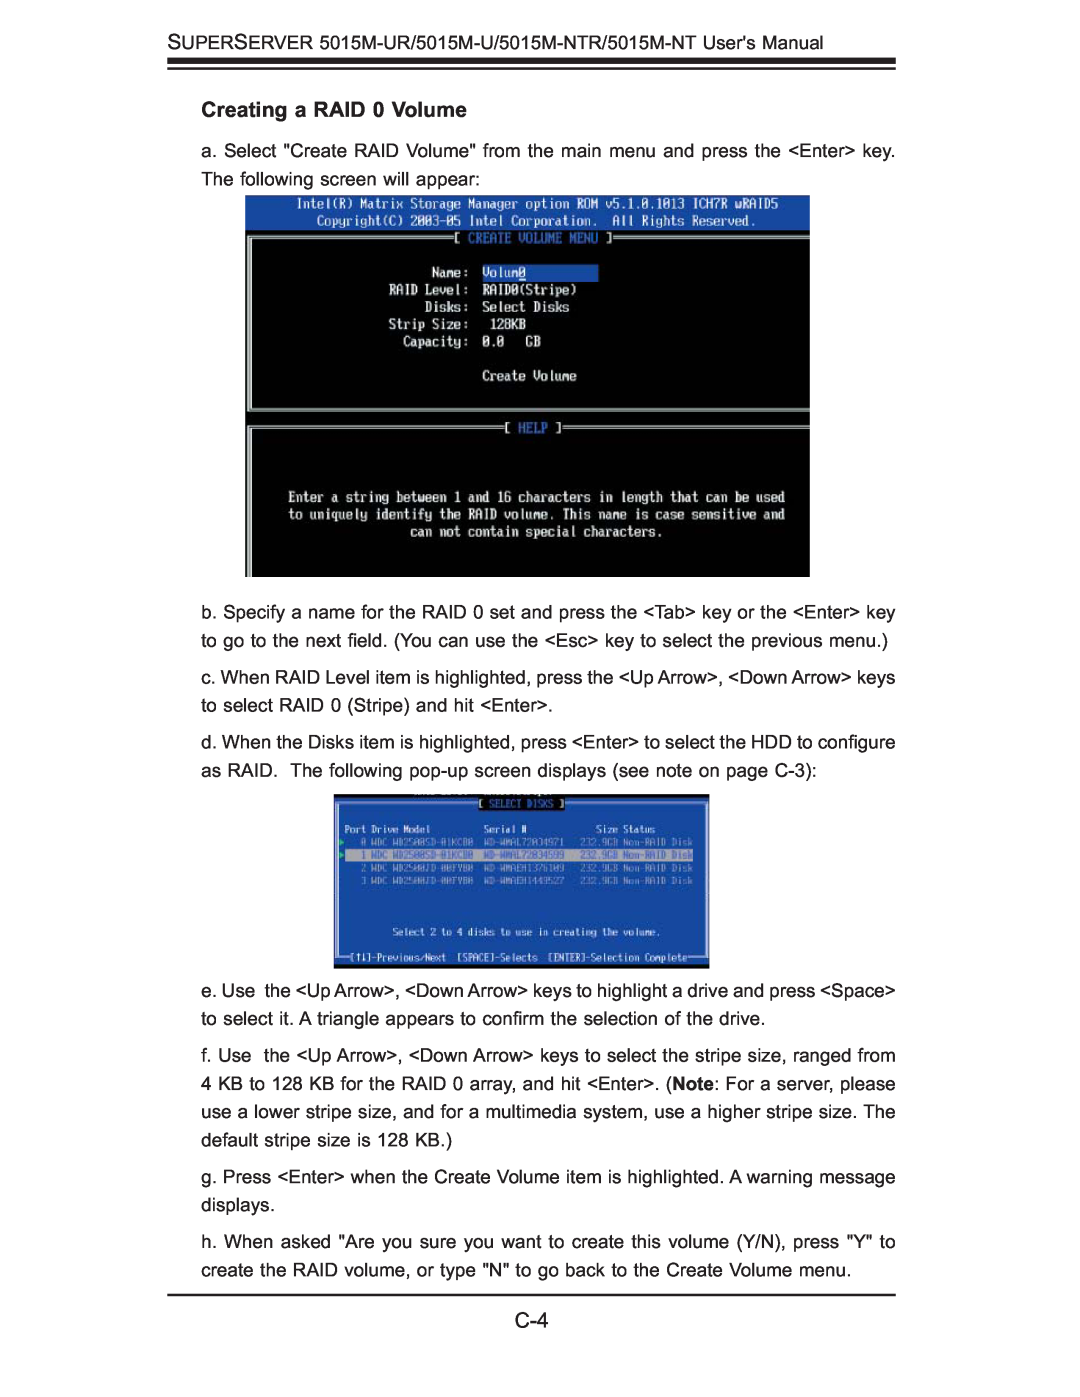 SUPER MICRO Computer 5015M-UR, 5015M-NTR user manual Creating a RAID 0 Volume 